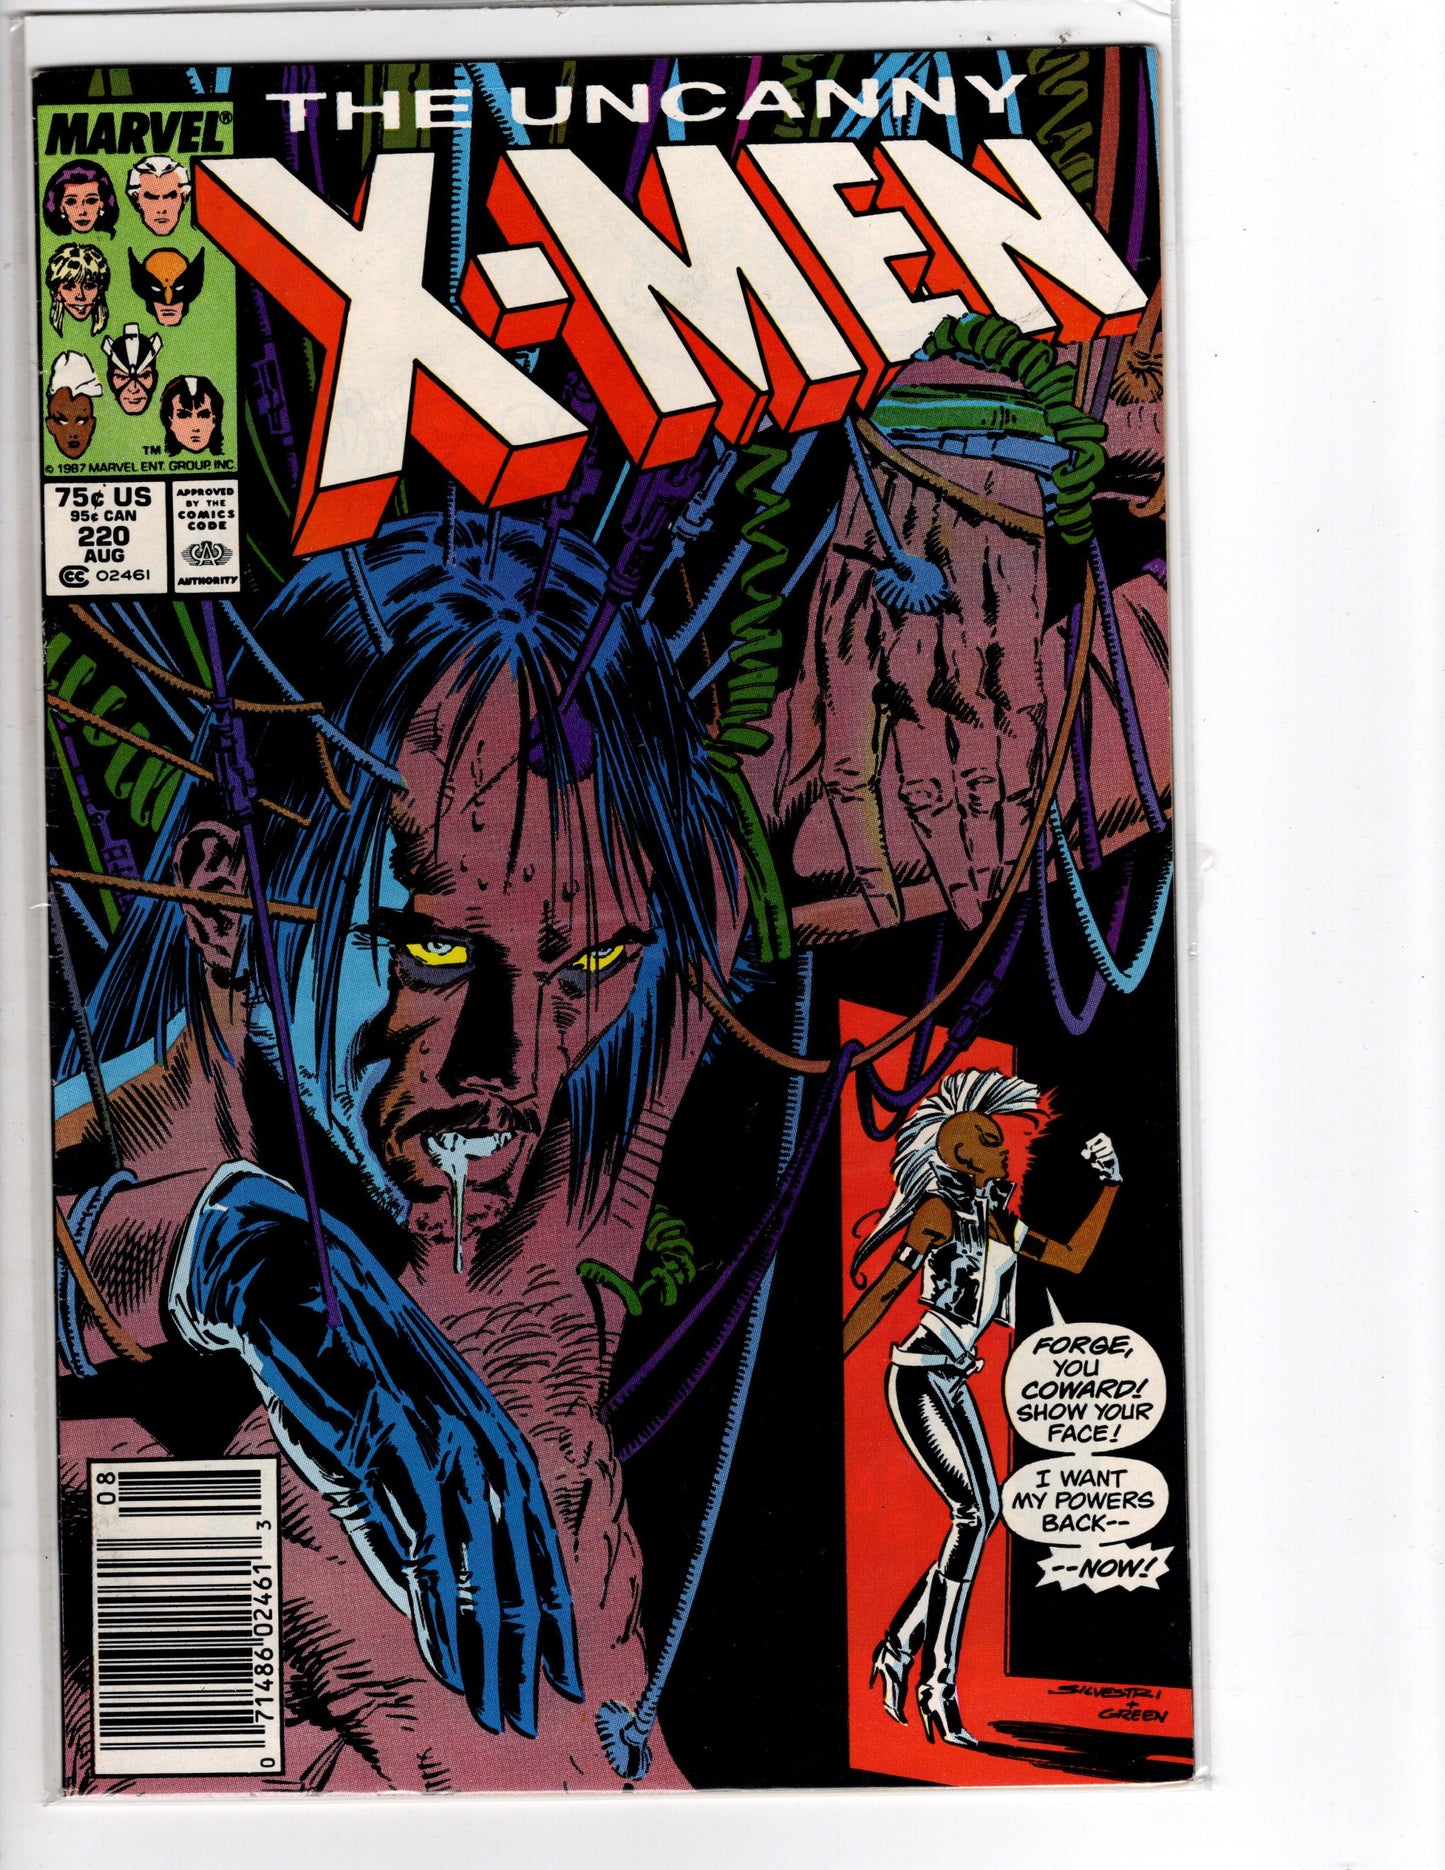 The Uncanny X-Men #220